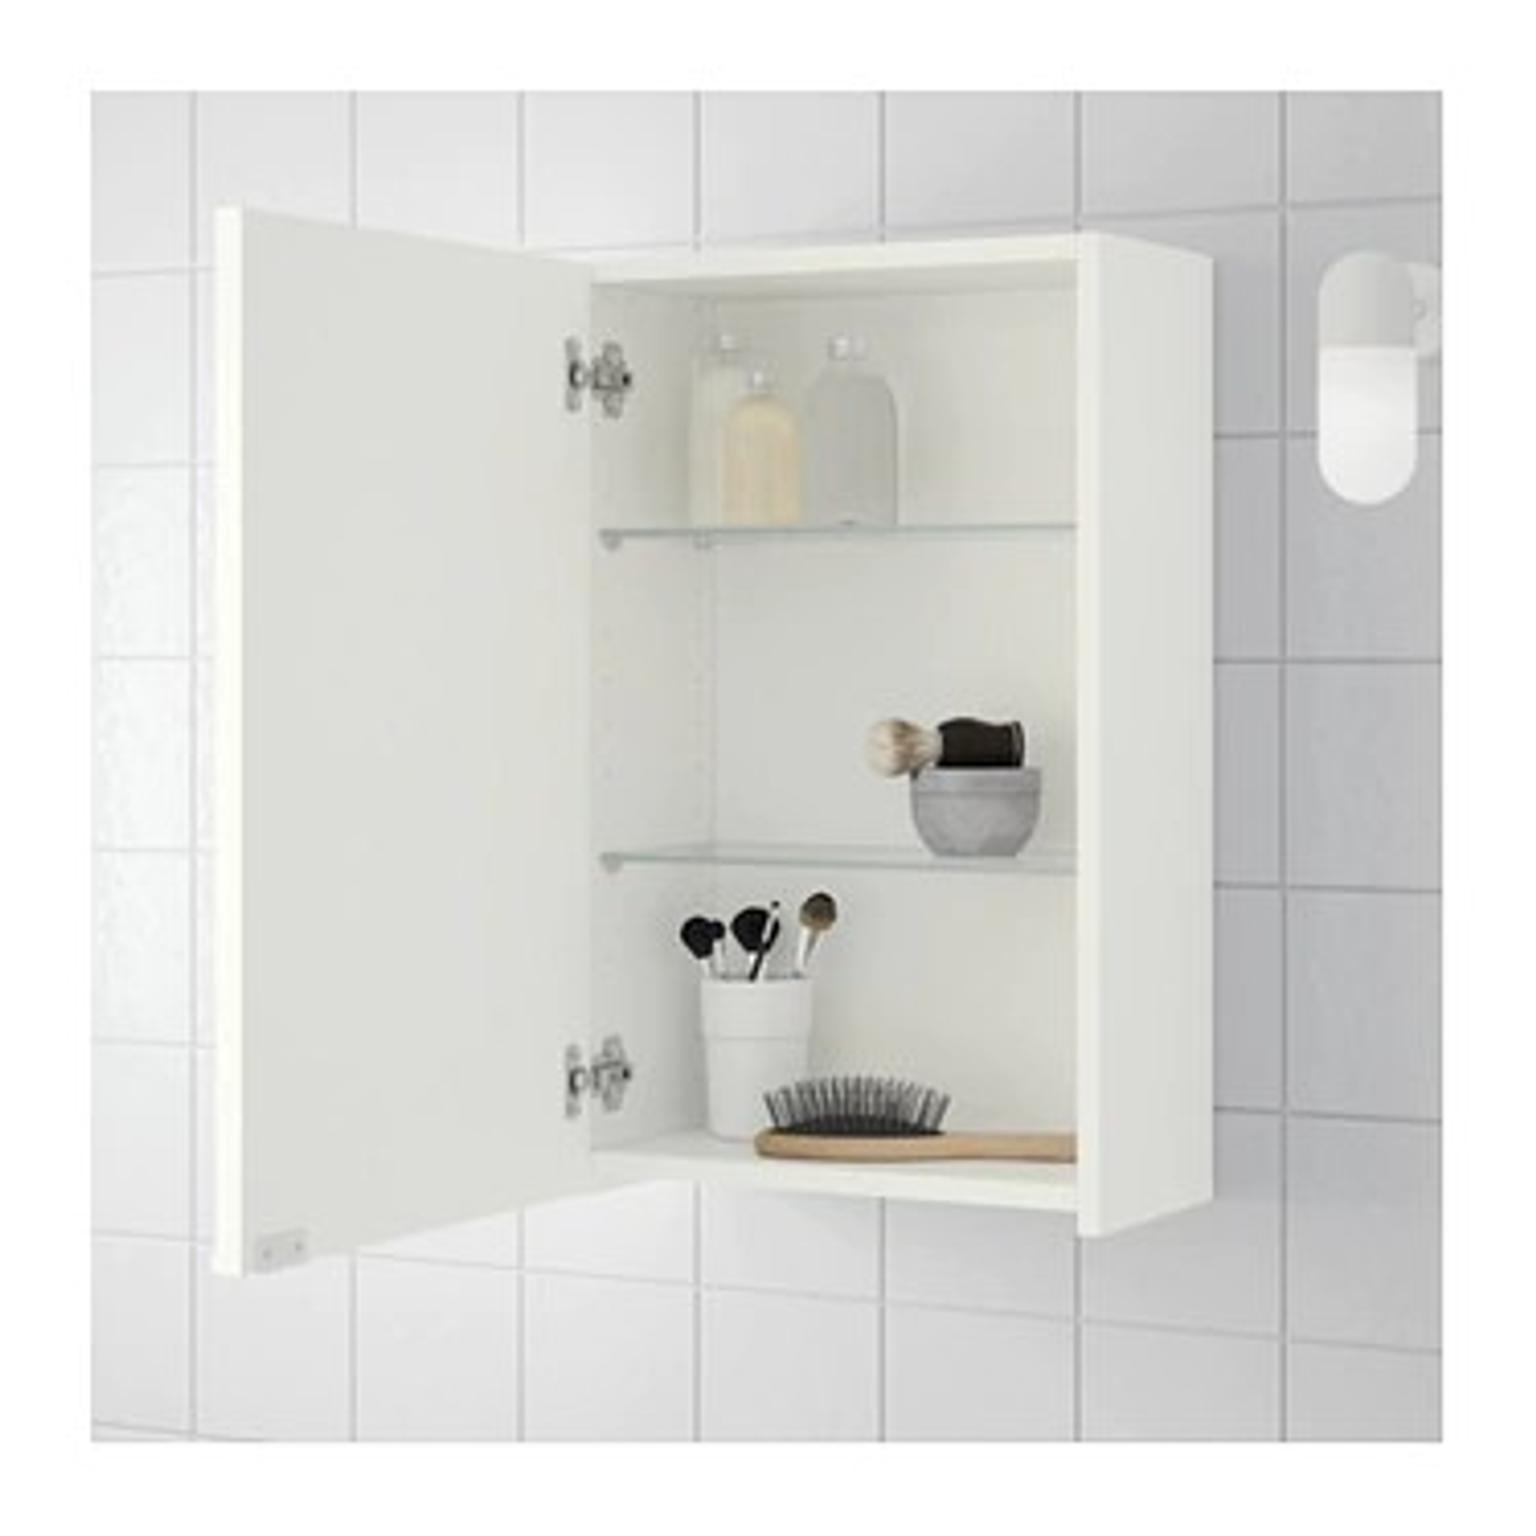 Ikea Lillangen White Bathroom Mirror Cabinet In N14 Enfield For